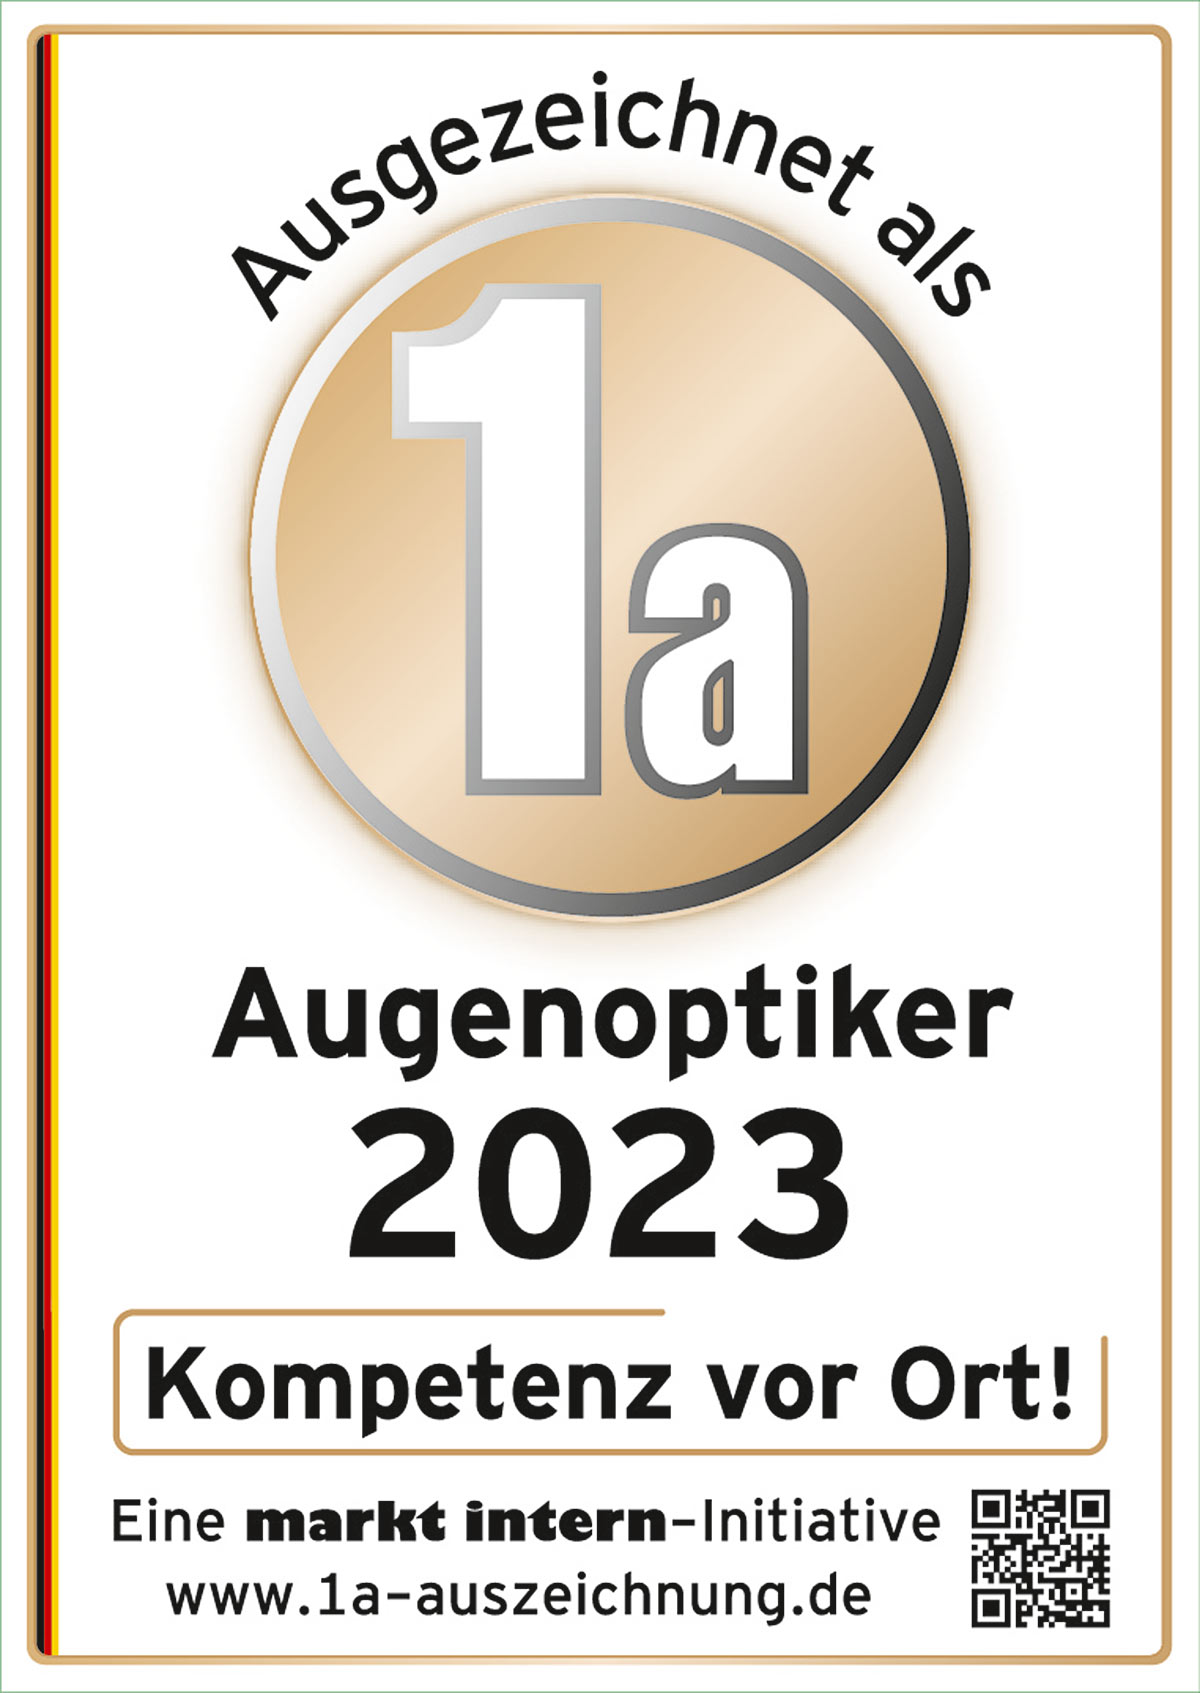 Aushezeichnet als 1 A Augenoptiker 2023 - Schier Optik Saalfeld/Neuhaus